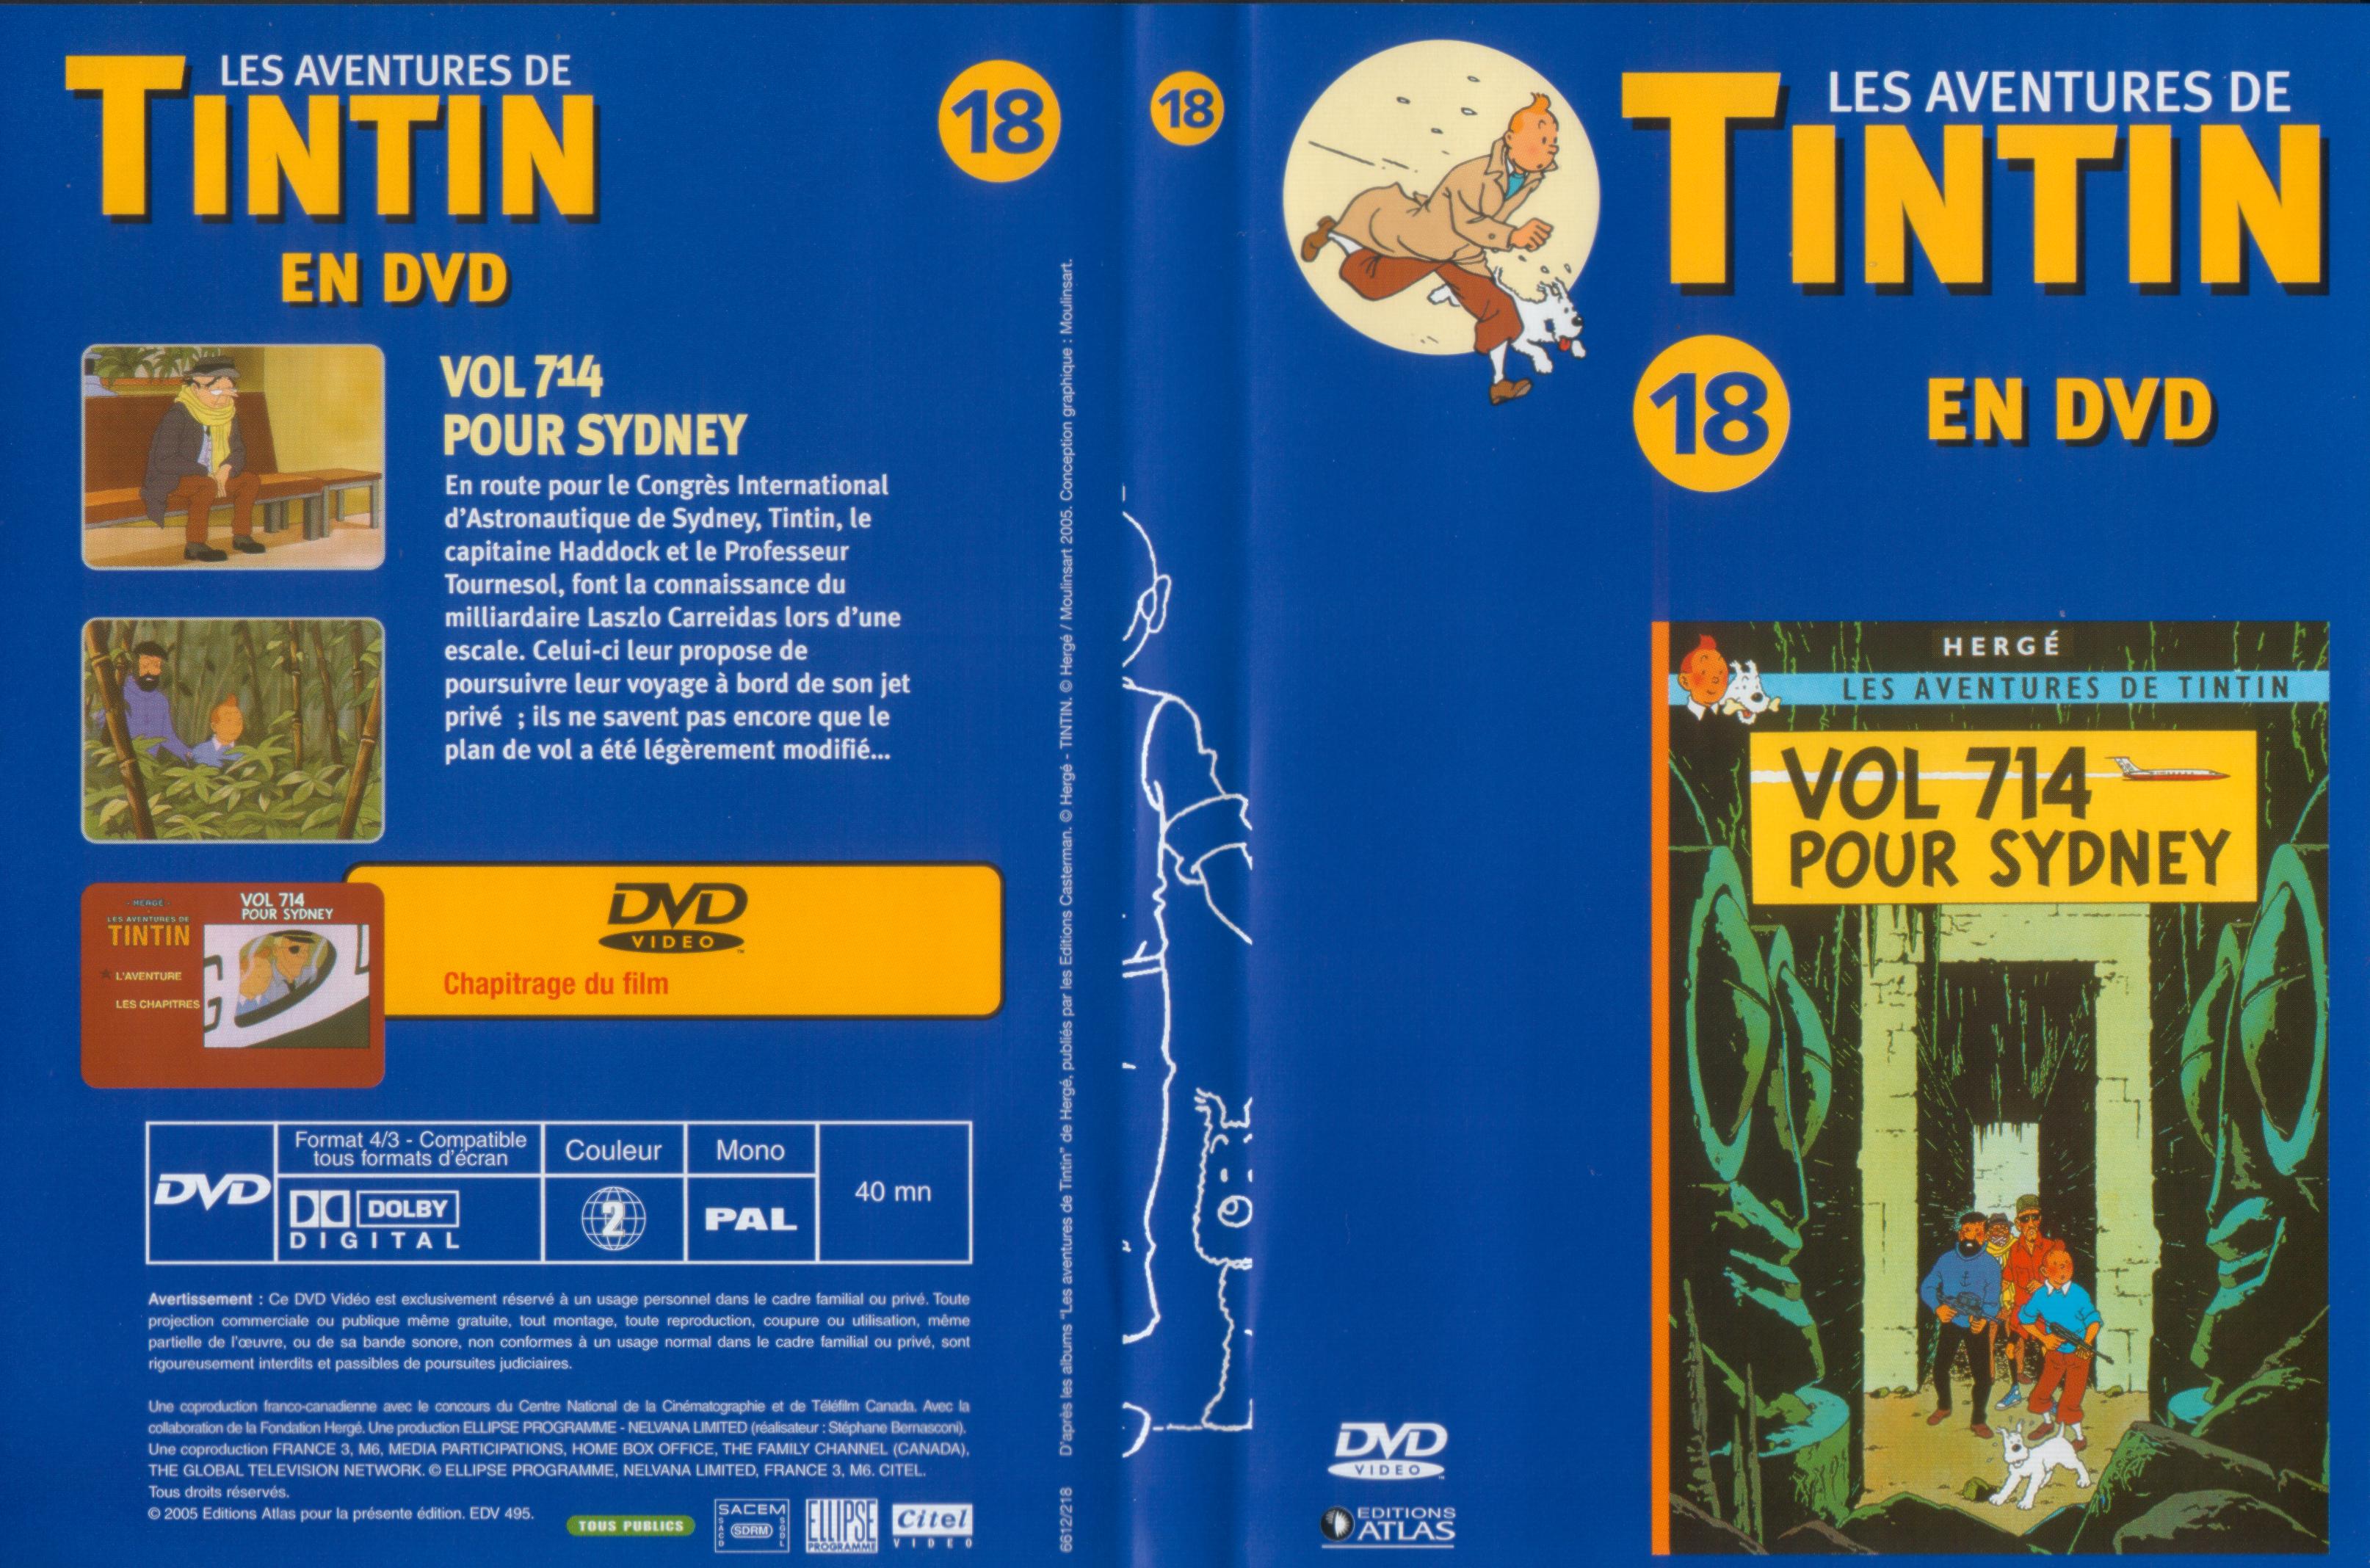 Jaquette DVD Tintin - vol 18 - Vol 714 pour sydney